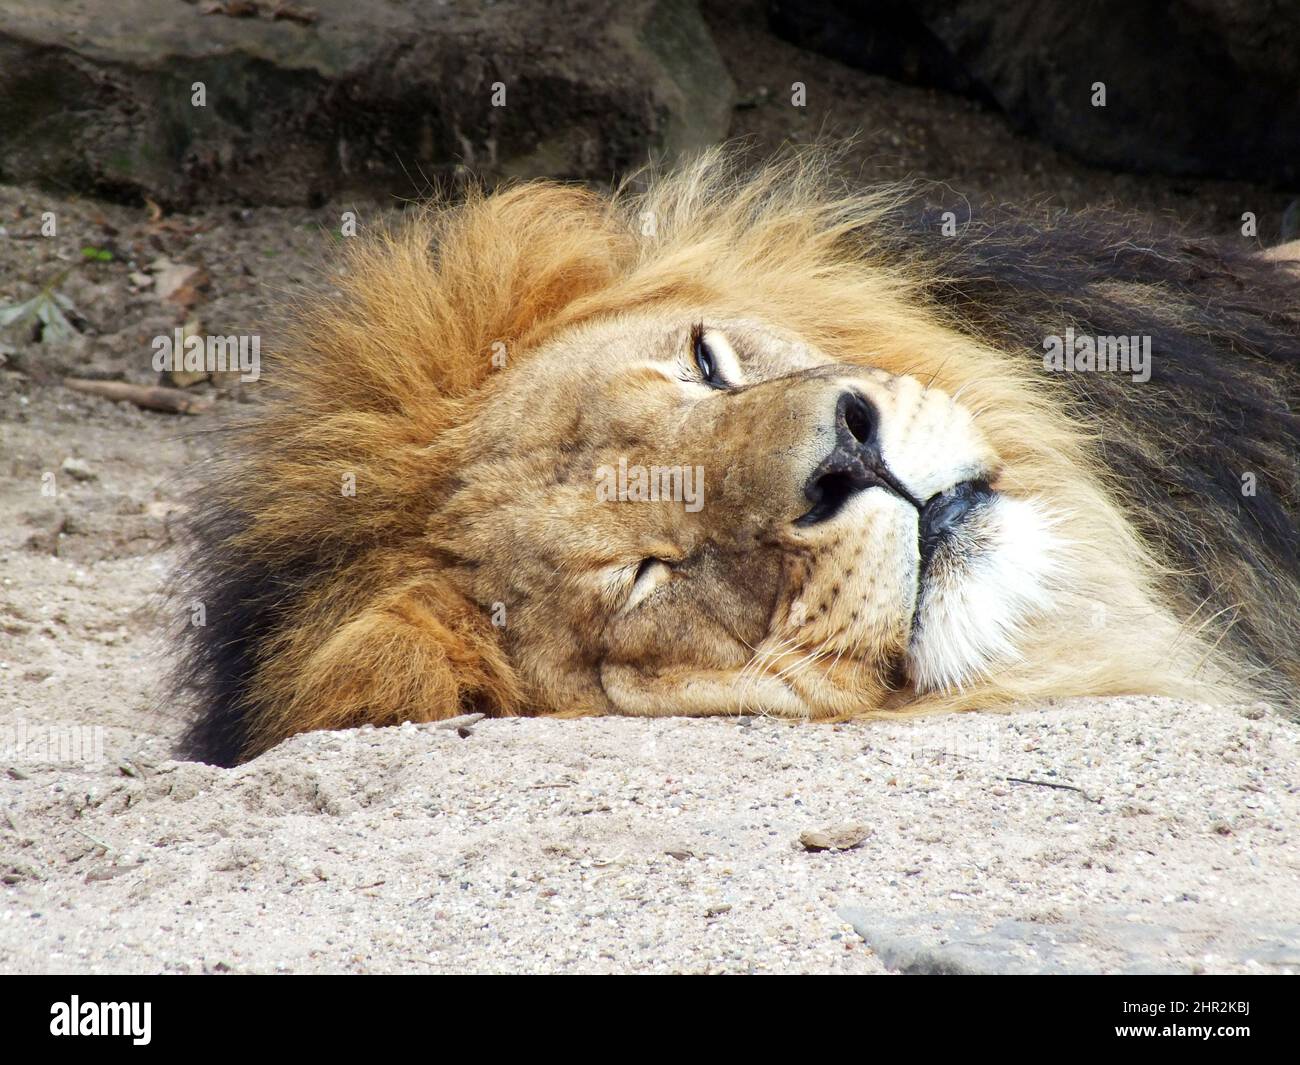 Löwenkopf aus der Nähe Schlafen auf sandigen Boden vor Felsen, liegend Löwe Gesicht Portraitfoto, große Katze ruht, Fokus, wild Tier Bild in einem Zoo Stockfoto